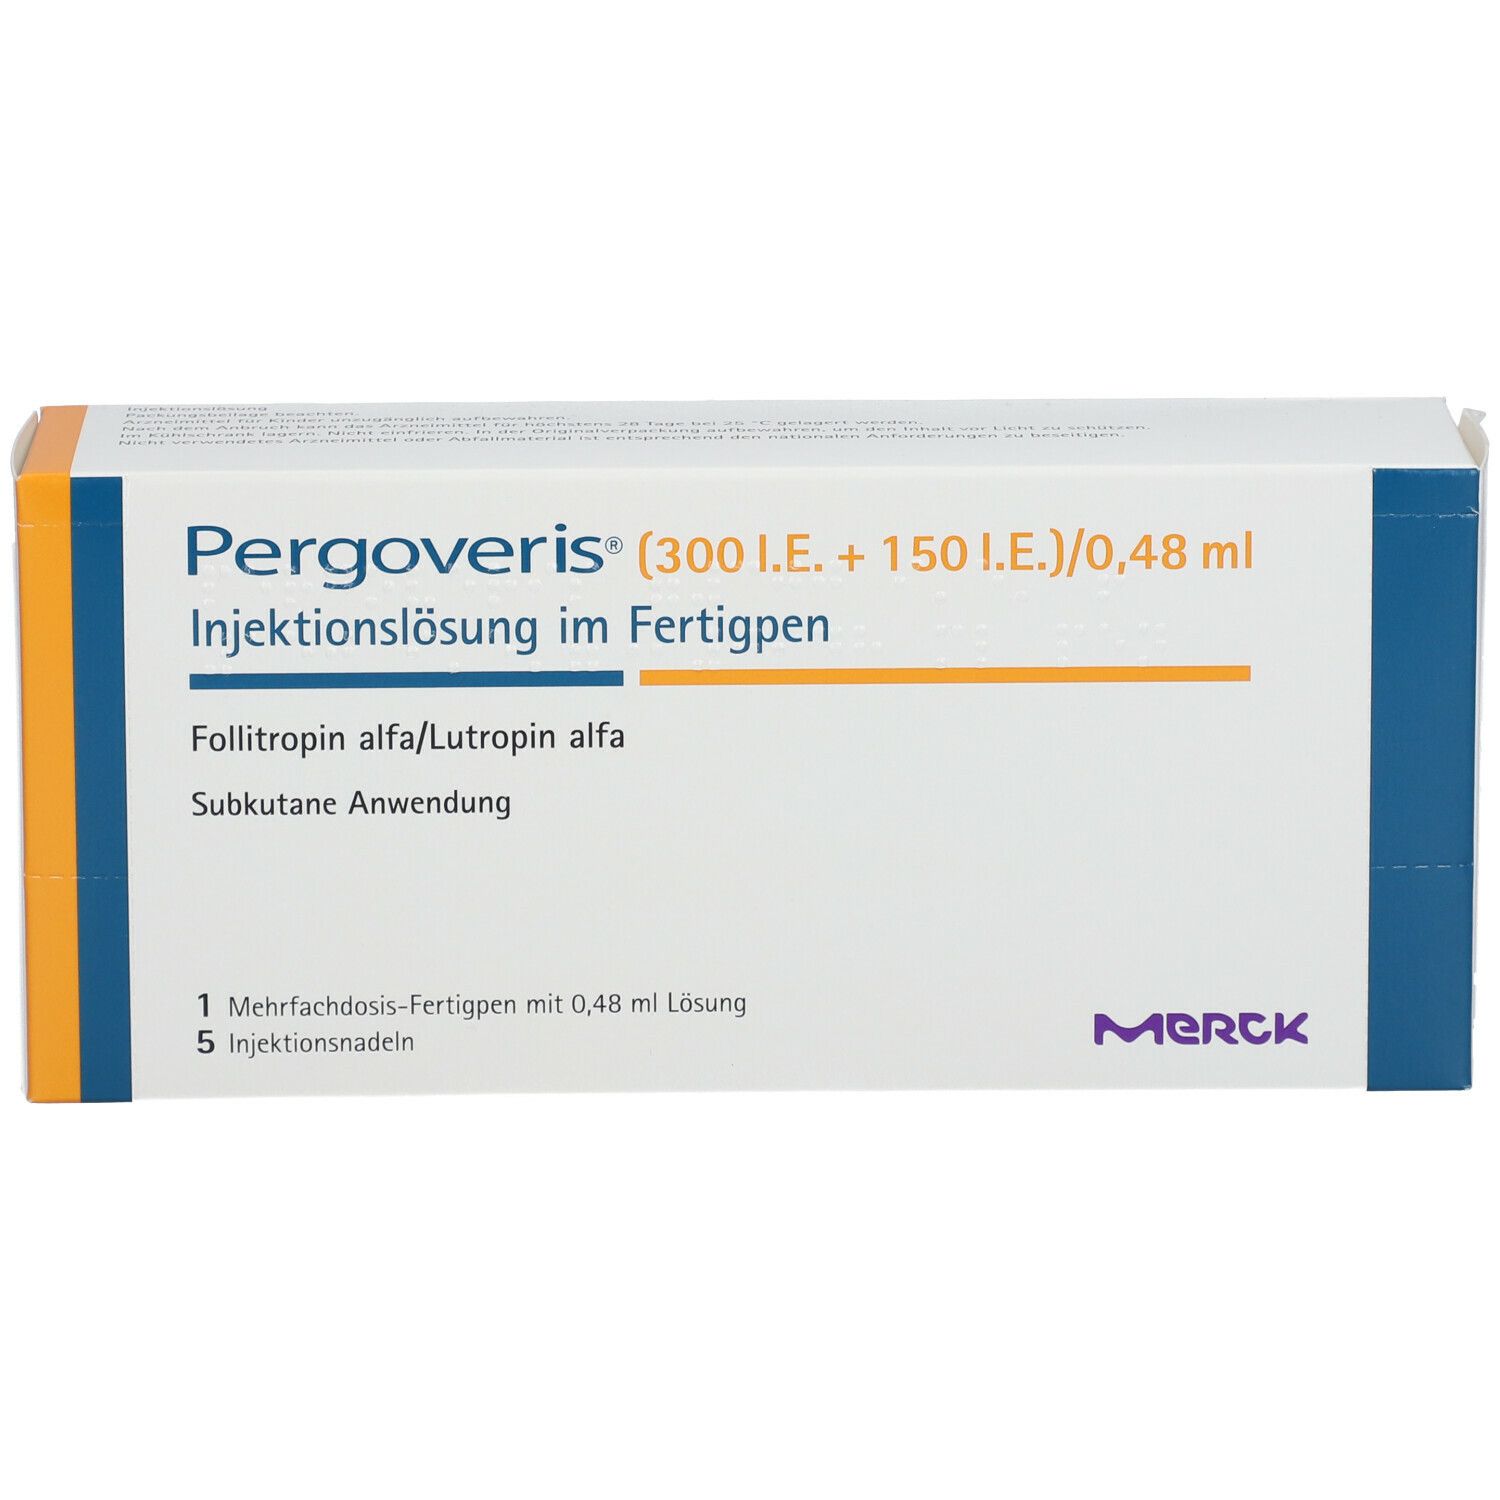 Pergoveris® (300 I.E. + 150 I.E.)/0,48 ml